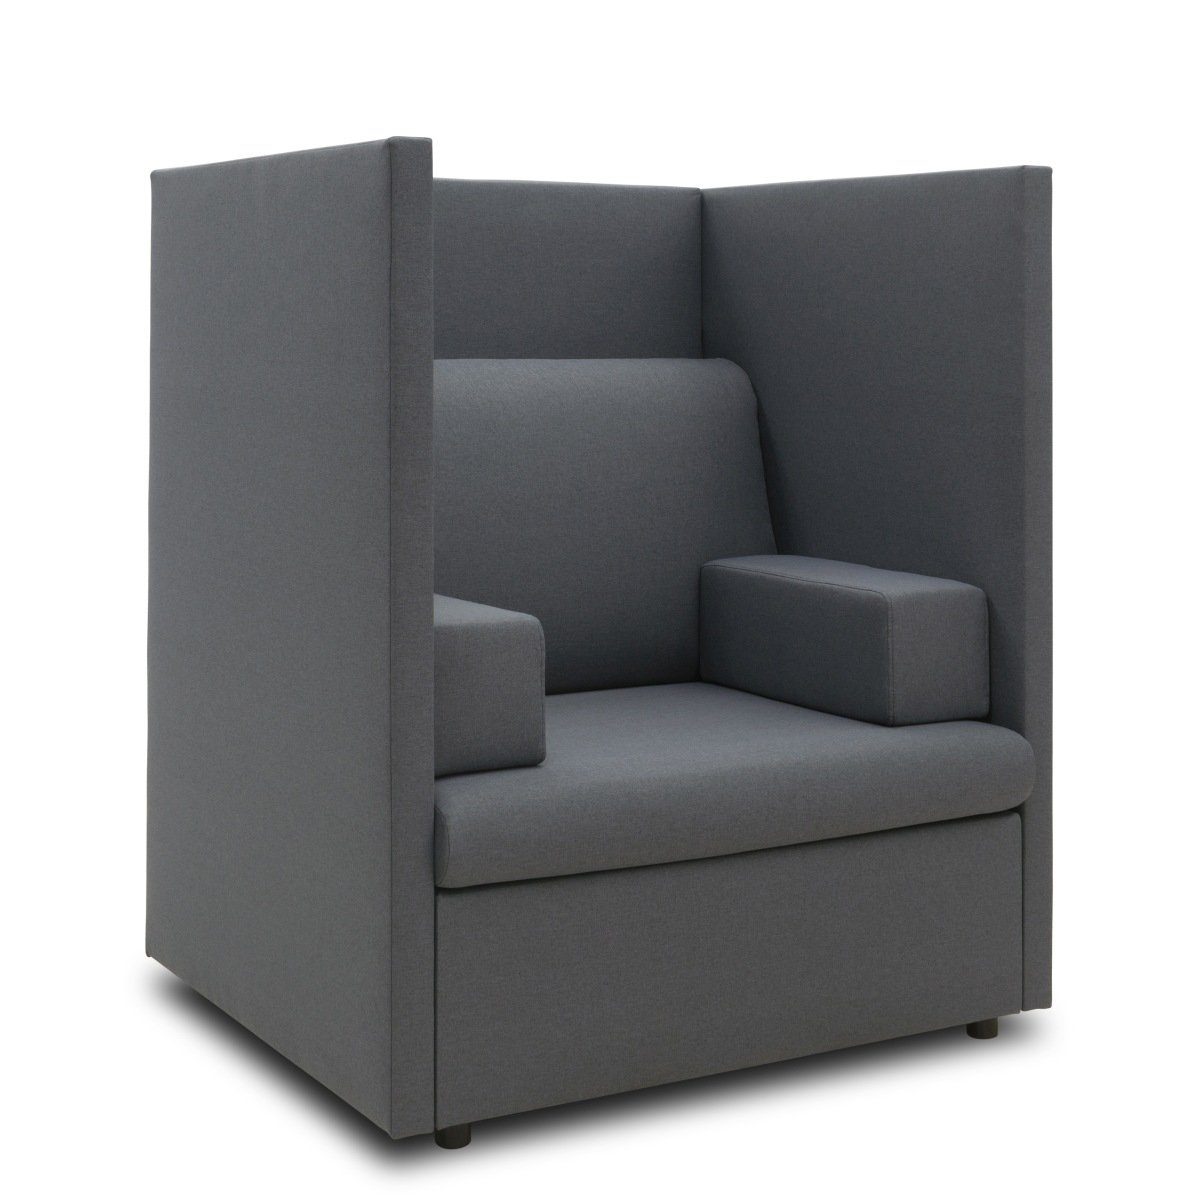 Top-Verkaufstipp Pickup-Möbel Sofa Outdoor Gartensofa Einsitzer Sessel Teile, 1 Sylt, wetterfest wetterfest